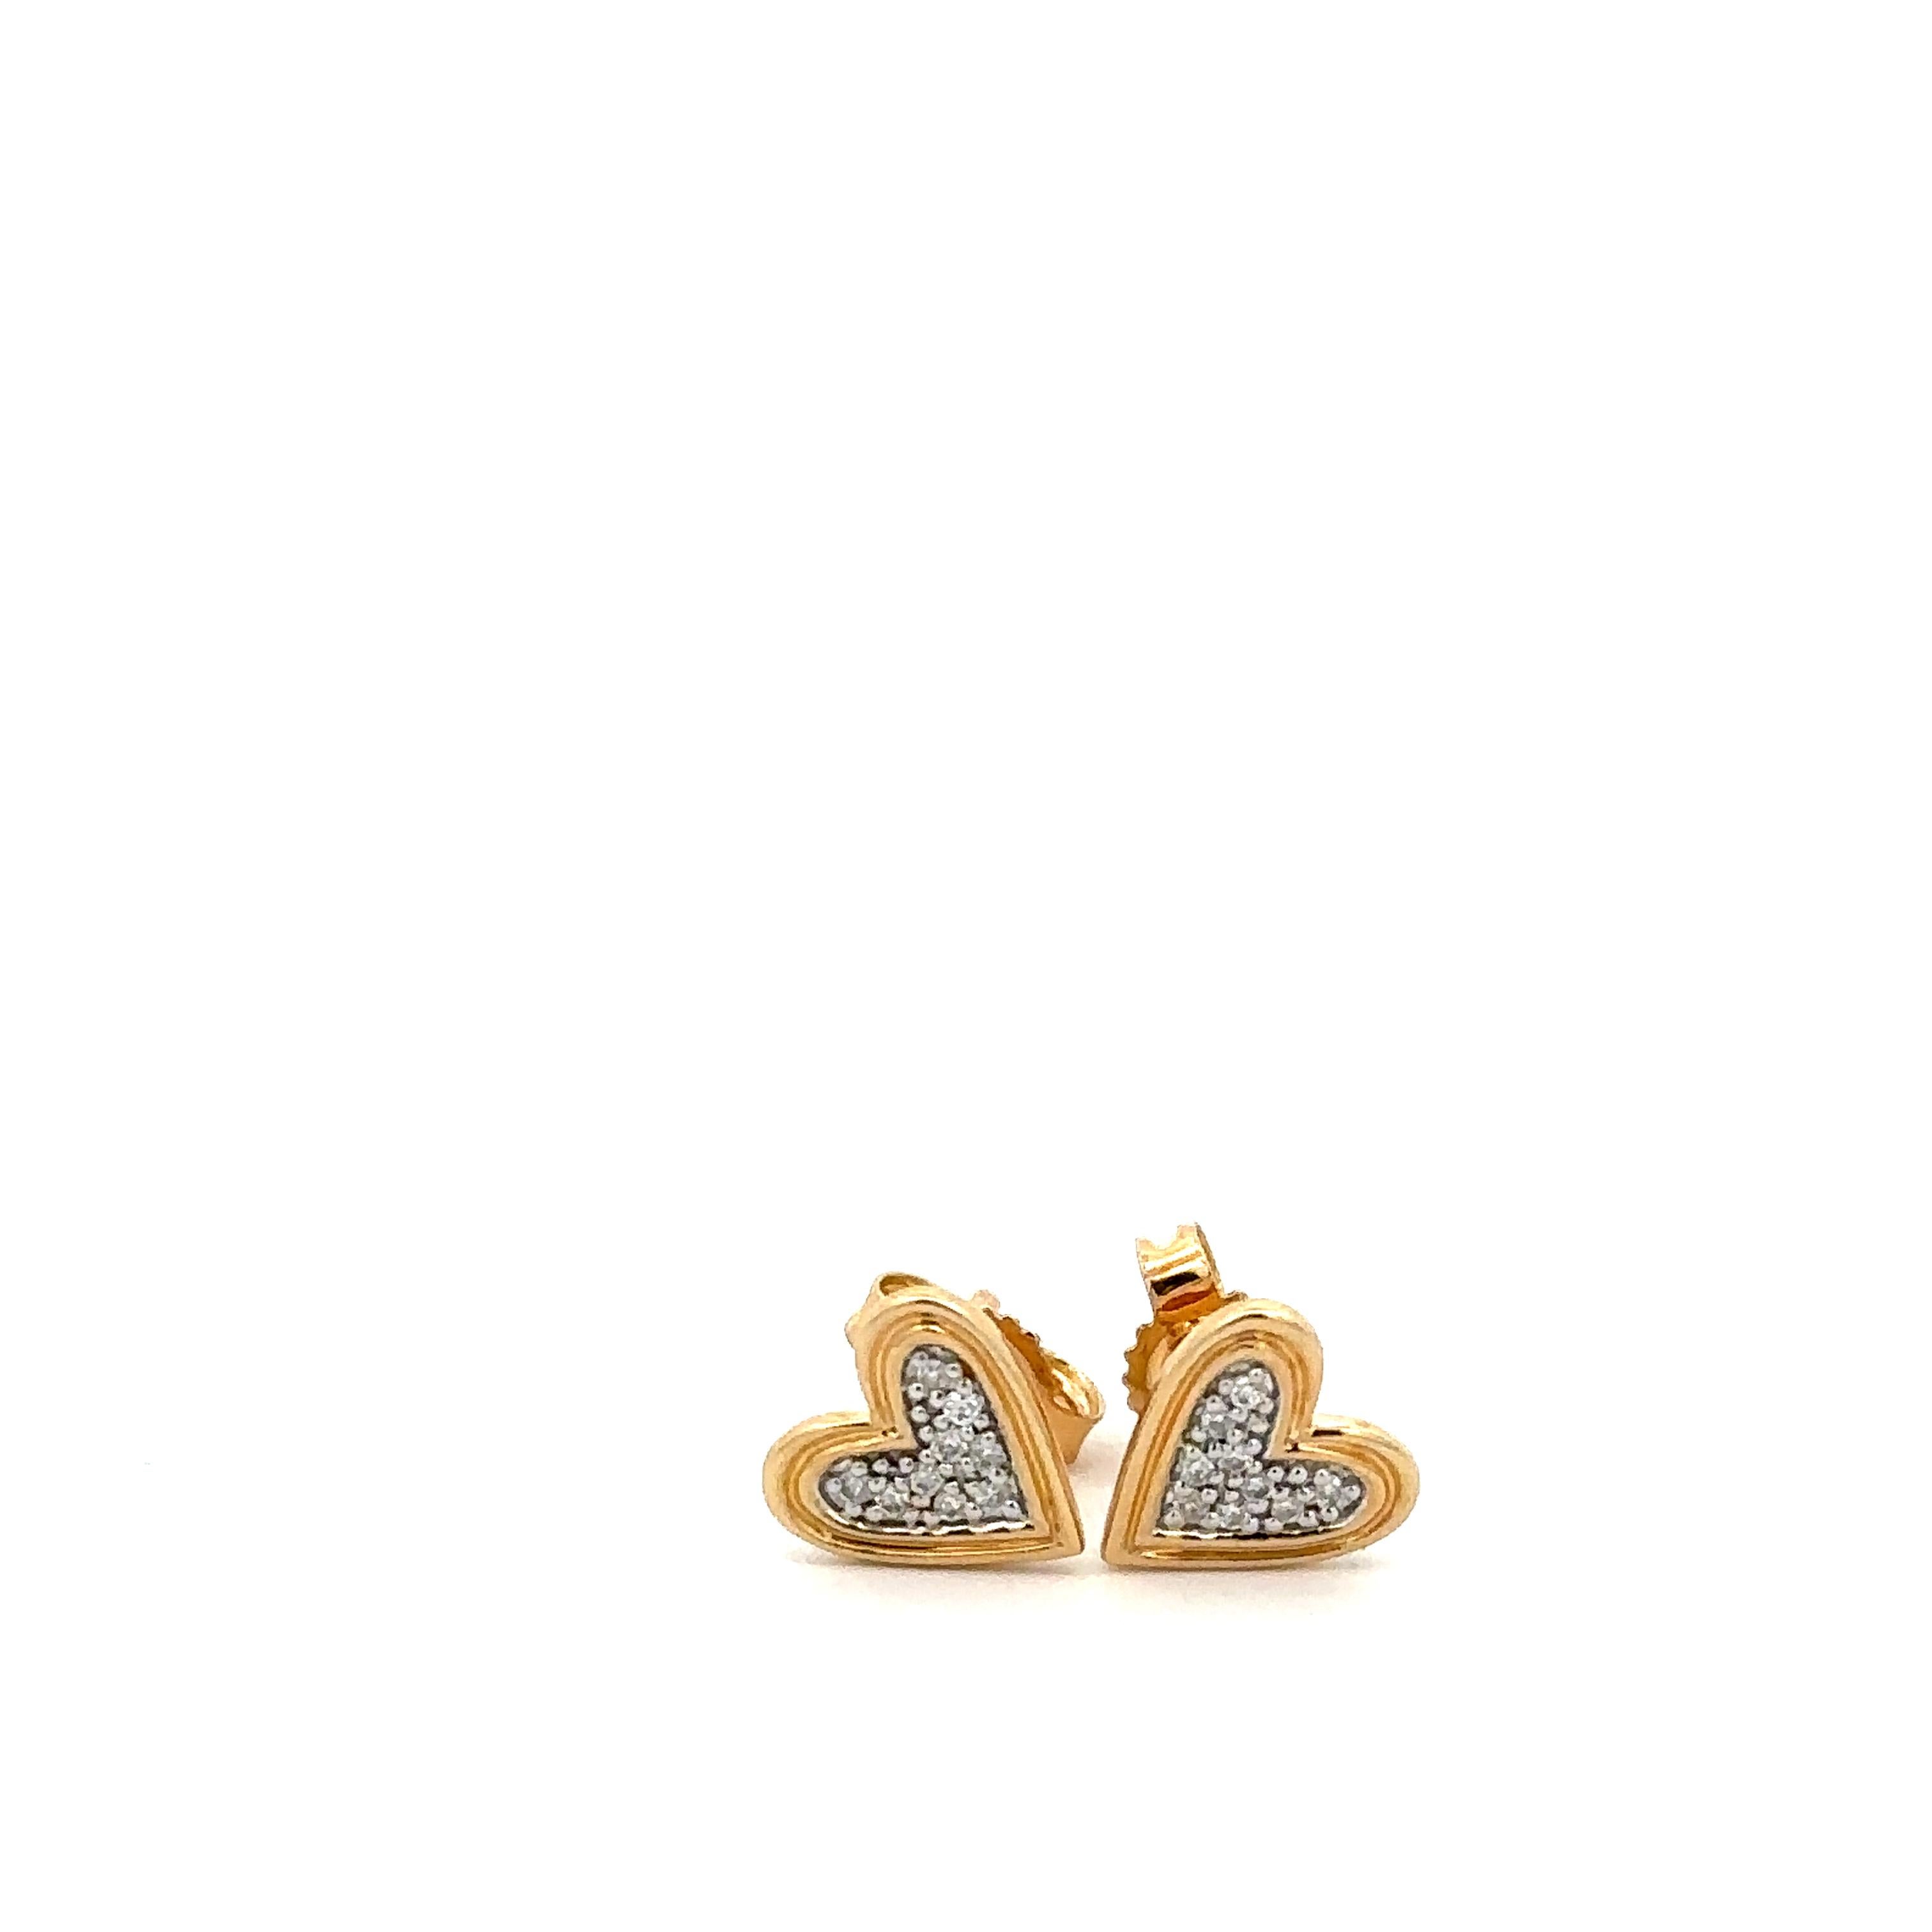 Adina Reyter One of a Kind Large Pave Heart Posts - Y14

Poteaux en or jaune 14k avec diamants en pavé en forme de cœur.

Dimensions : 7 mm x 7 mm

Poids total en carats des diamants : 0,10 CT
